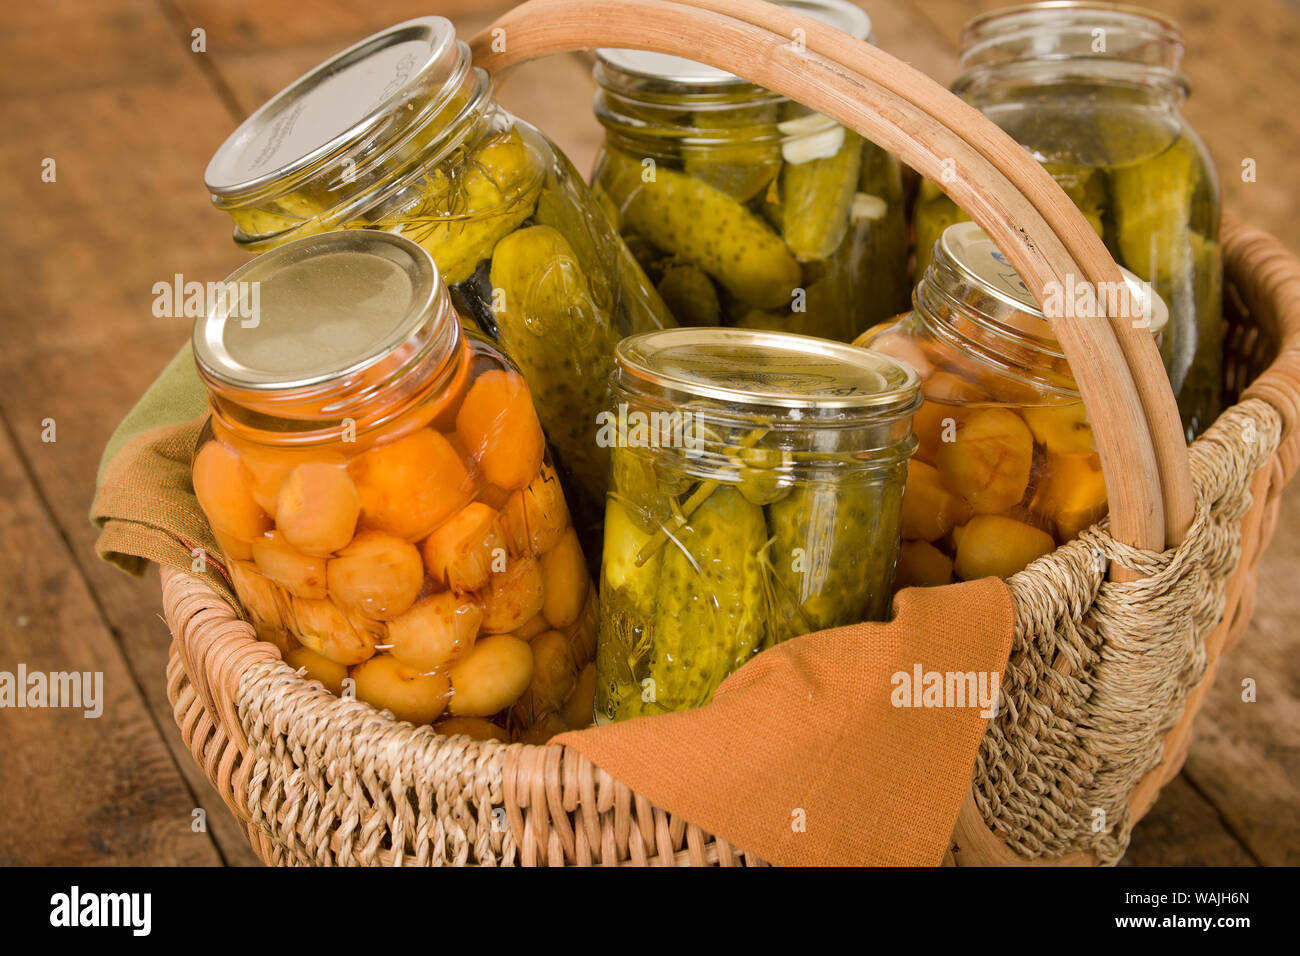 Heimat-dosen produzieren (Rainier Kirschen und Dill Pickles) in einem großen Weidenkorb ruht auf einem rustikalen hölzernen Tischplatte. Stockfoto